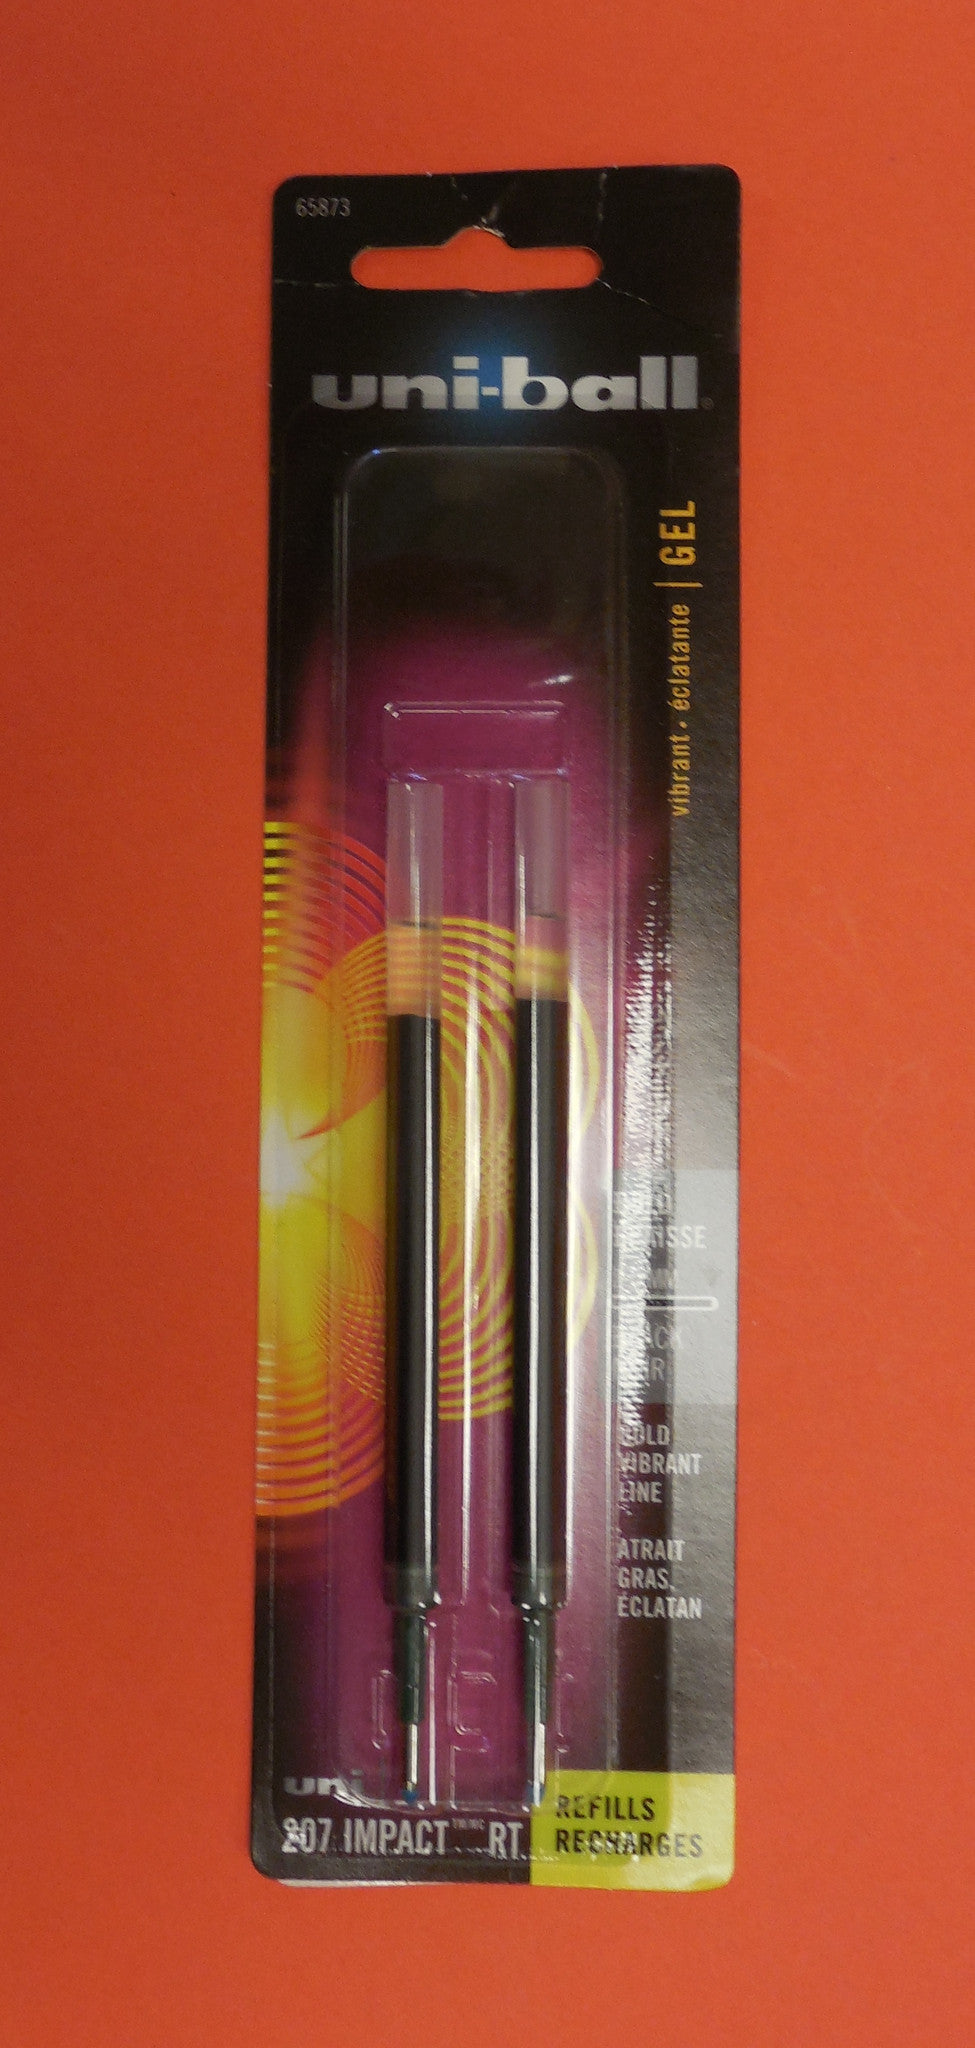 Refill kits for the uni-ball pen